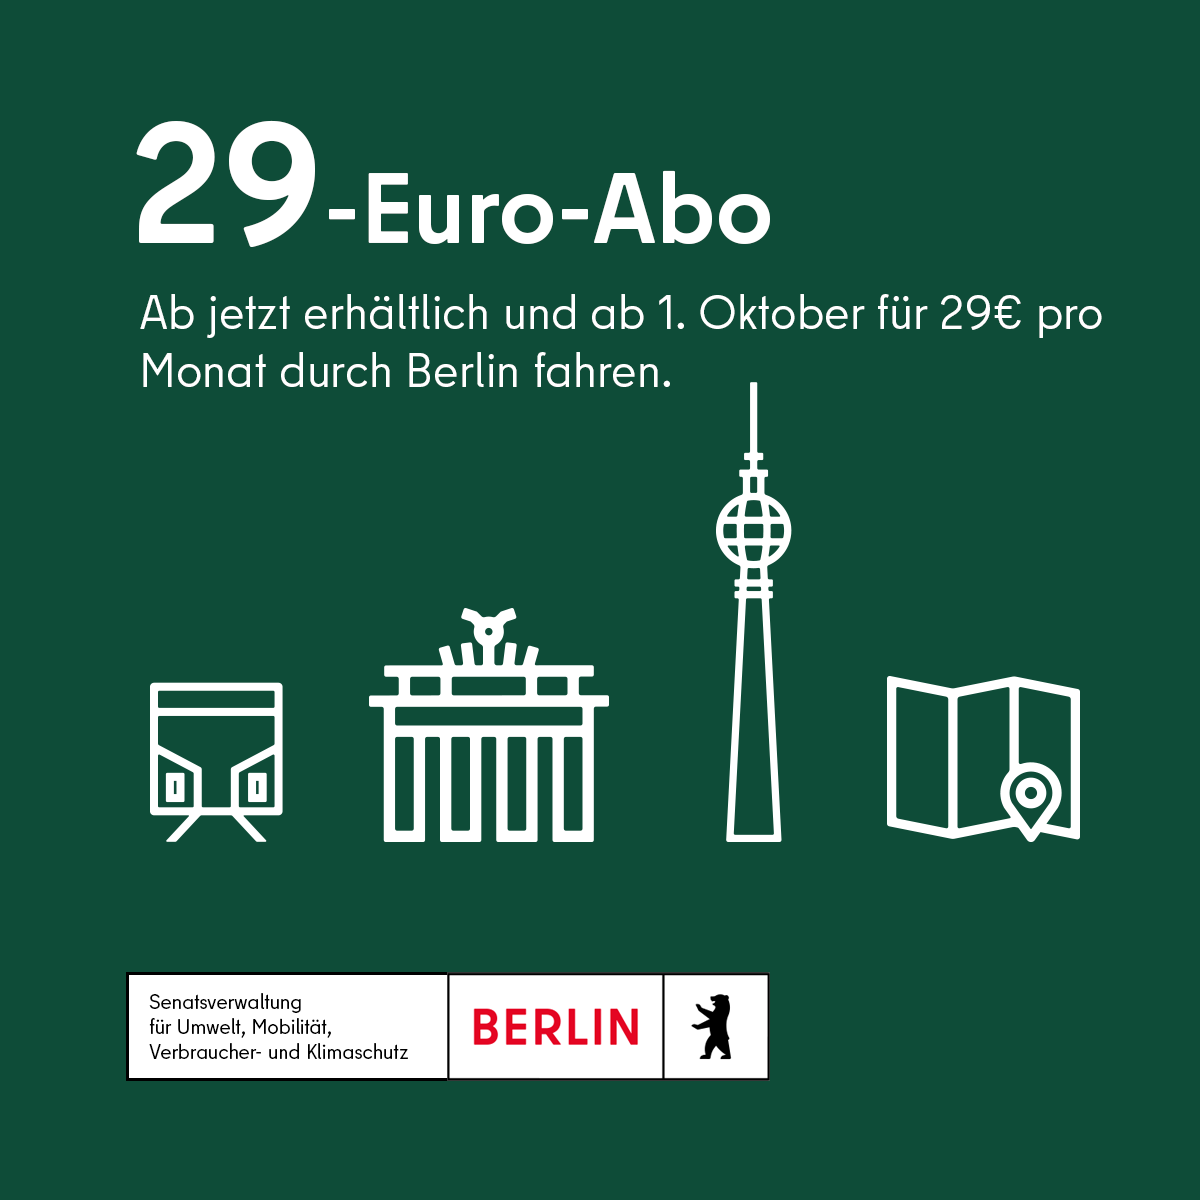 Ab sofort ist das #29Euro-Abo erhältlich 🚇💚. Das Abo kann ab 1.10. in ganz Berlin in den Tarifbereichen AB genutzt werden, entlastet Bürger*innen & schafft Anreize für klimafreundliche Mobilität. Mehr Infos unter 👉 vbb.de/tickets/abonne…